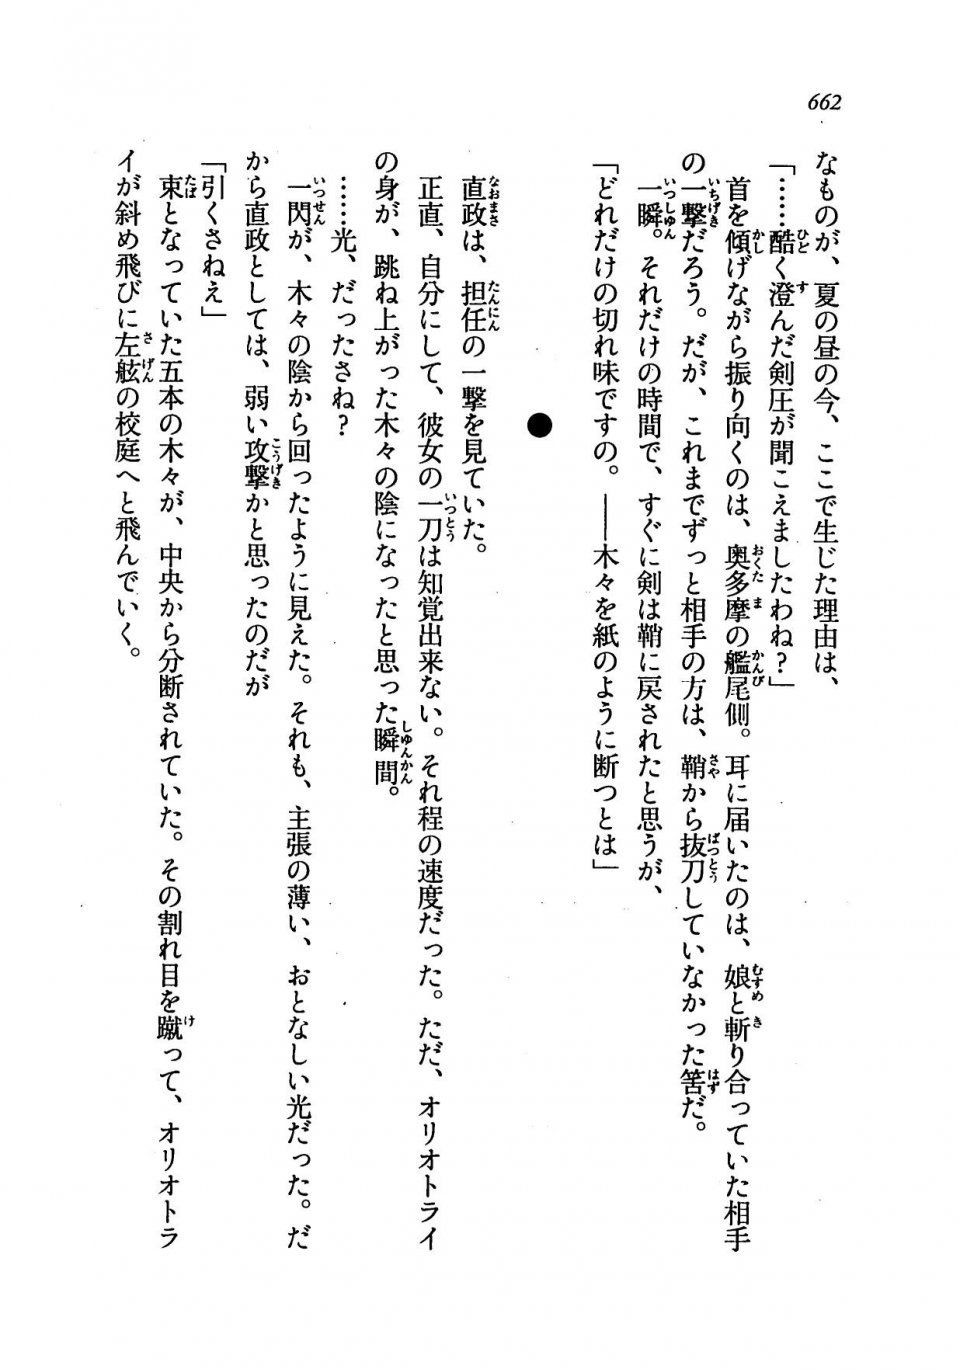 Kyoukai Senjou no Horizon LN Vol 19(8A) - Photo #662